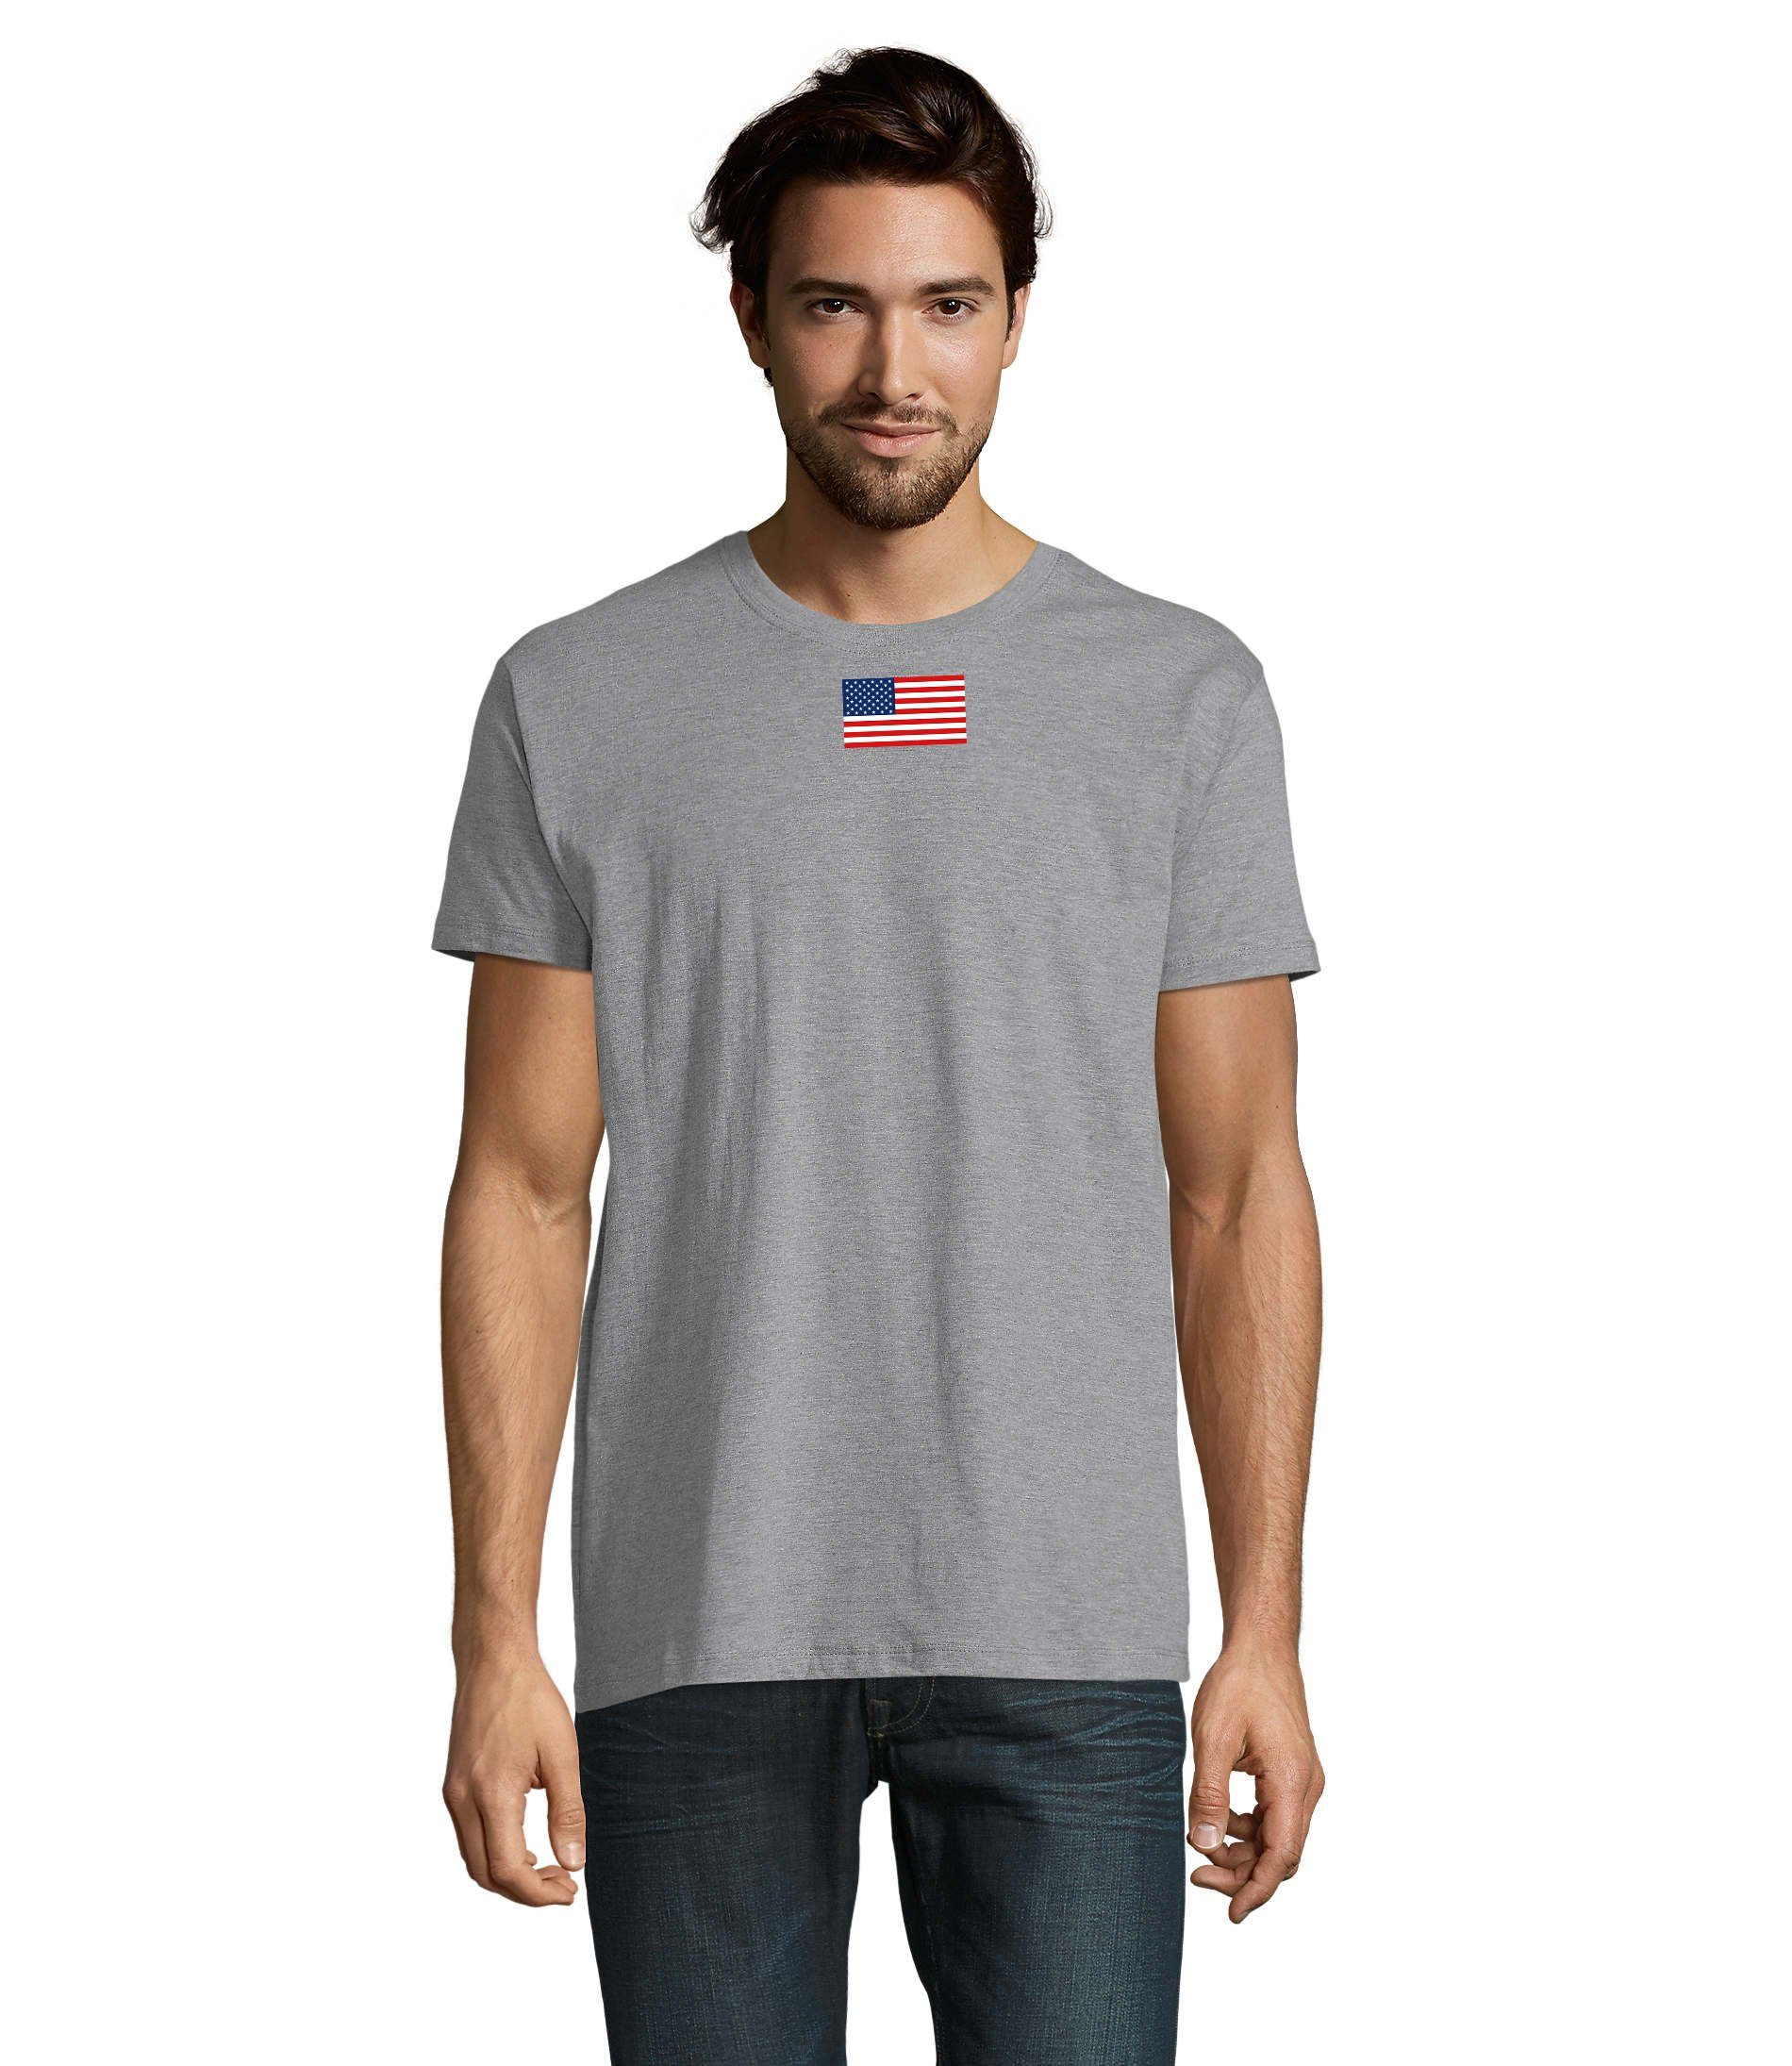 Blondie & Brownie T-Shirt Herren Nartion USA Vereinigte Staaten von Amerika Army Air Force Grau